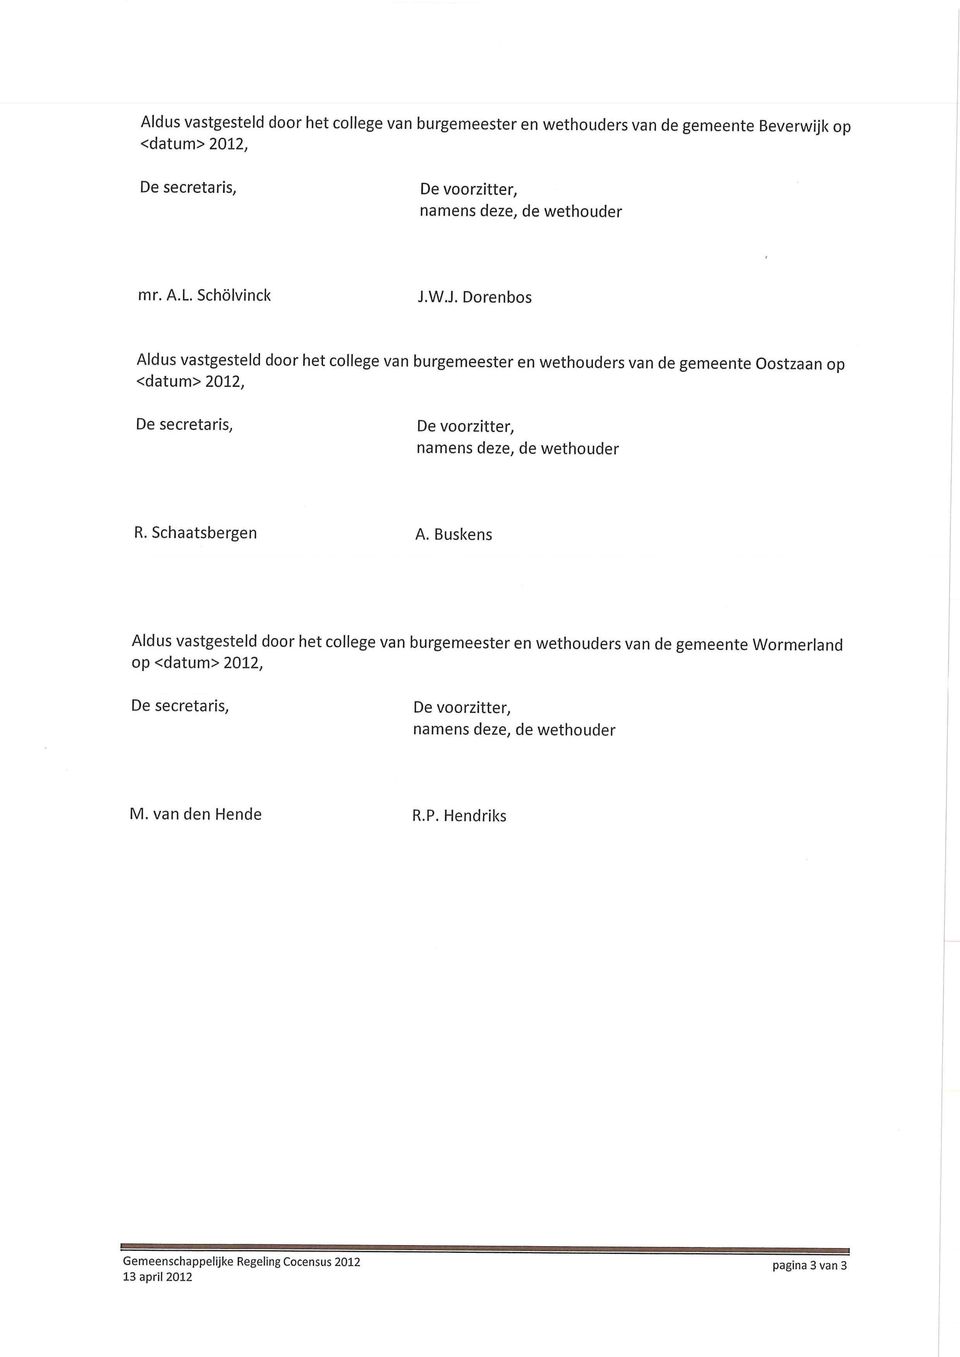 W.J. Dorenbos Aldus vastgesteld door het college van burgemeester en wethouders van de gemeente Oostzaan op <datum>2012. R.